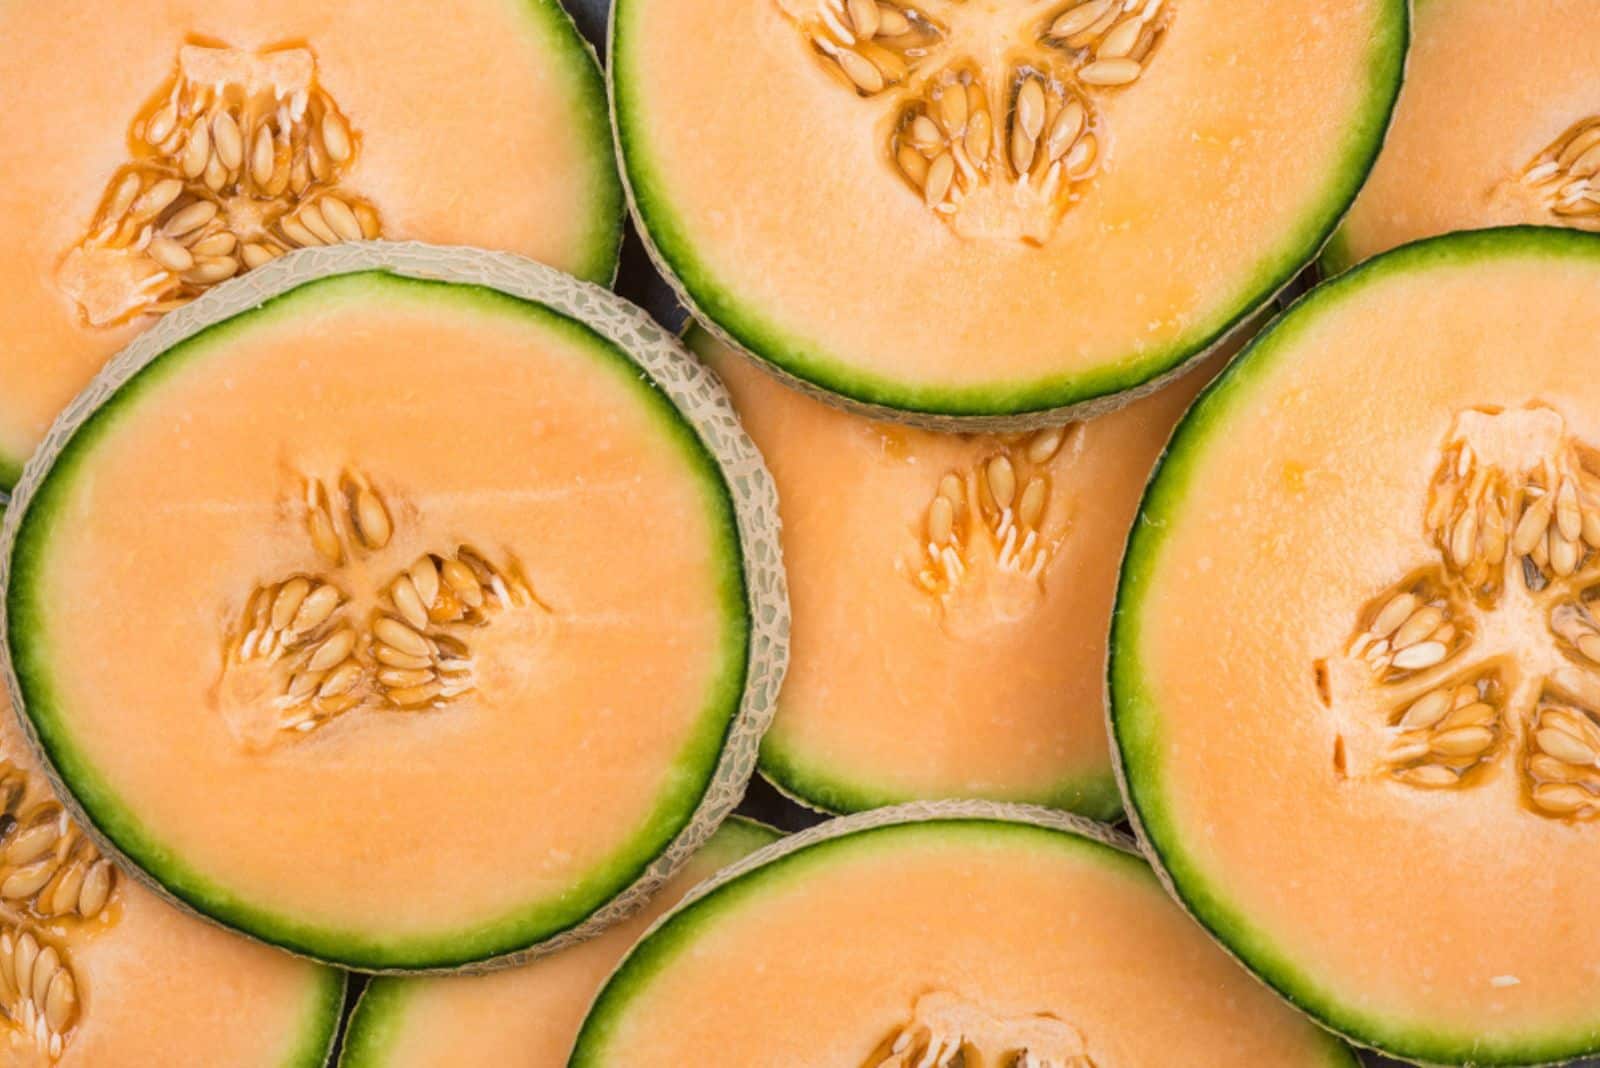 Cantaloupe melon slices